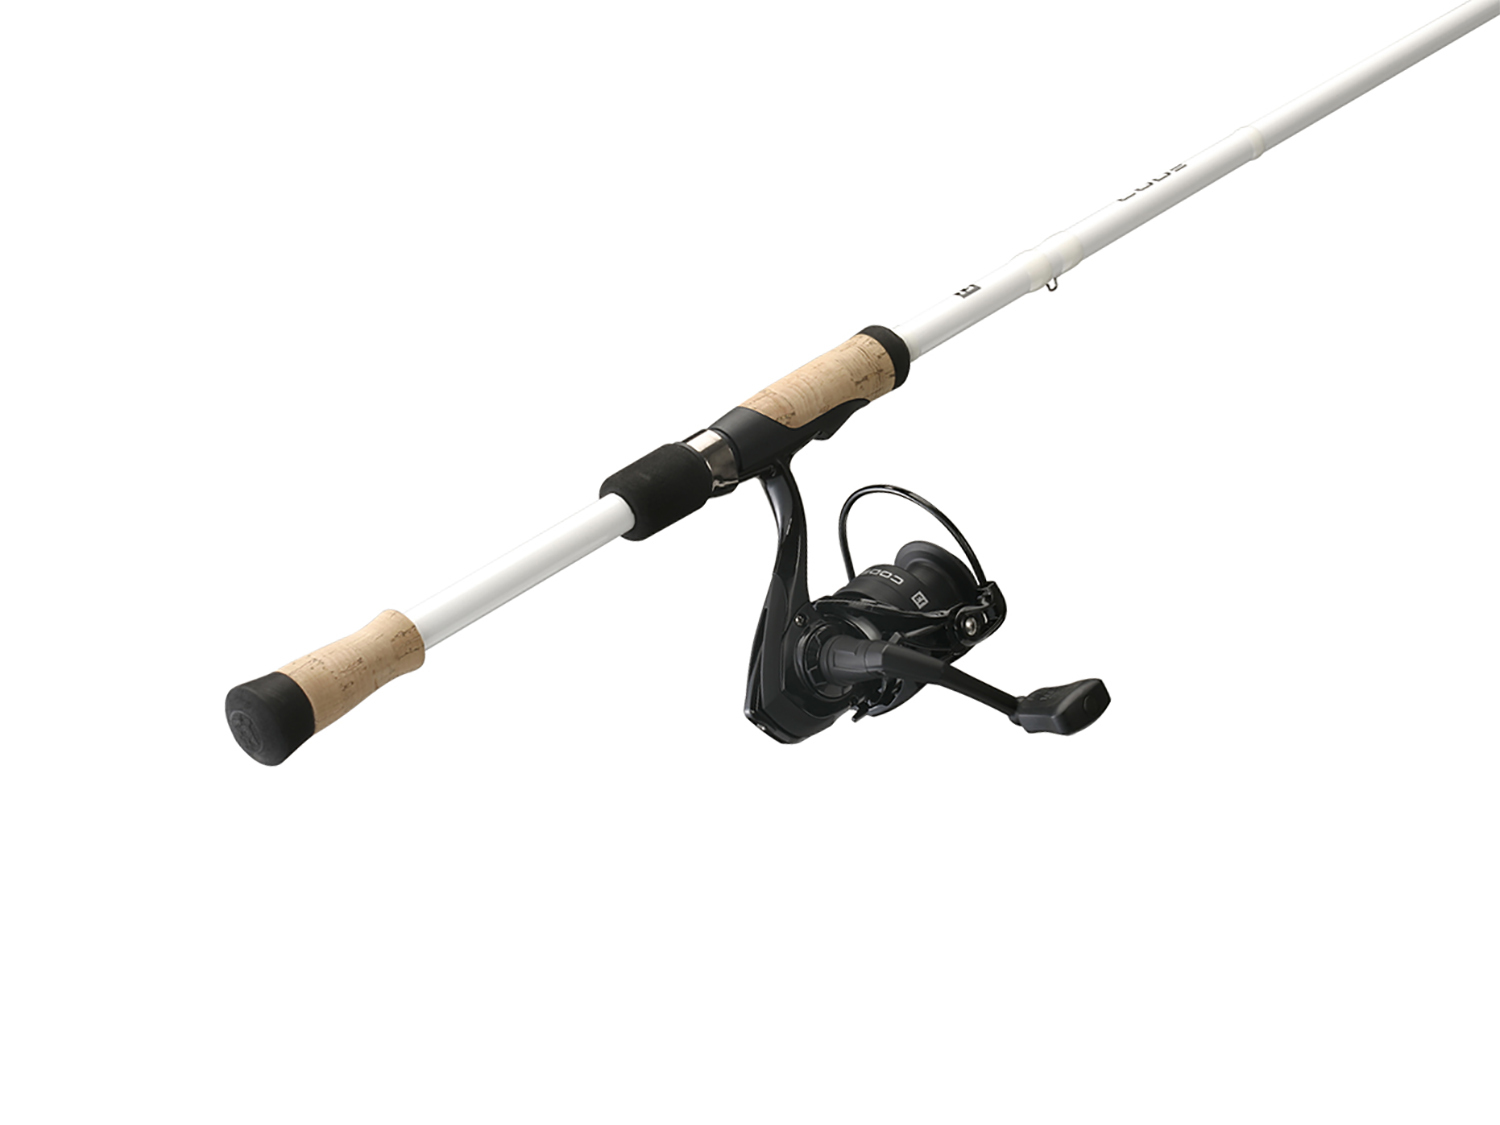 13 Fishing Rod Reel Combos - Fishing Rod Combos Spinning Reel Set